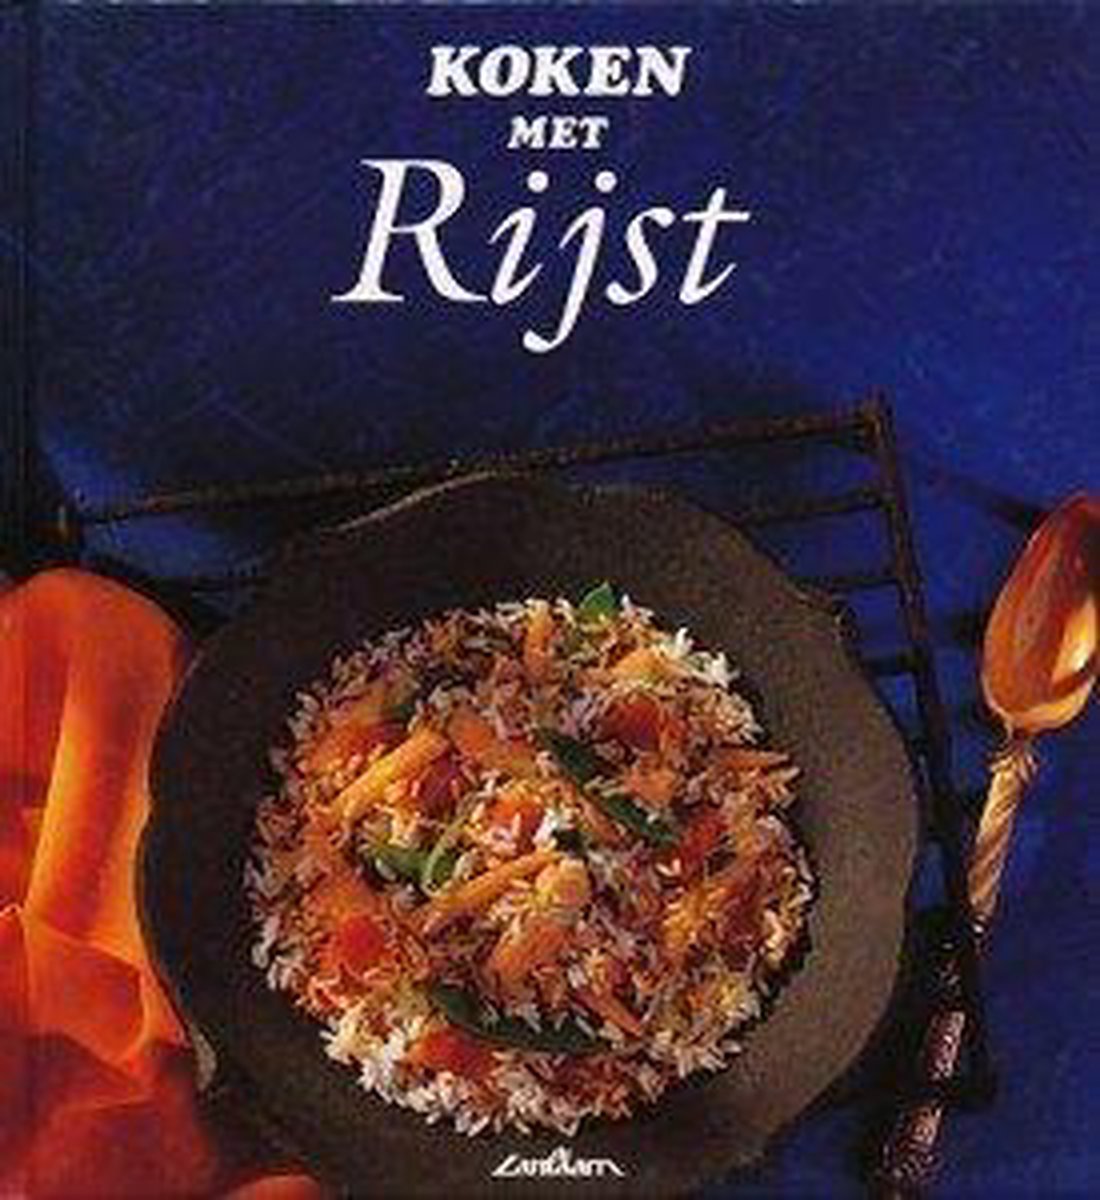 Koken met rijst